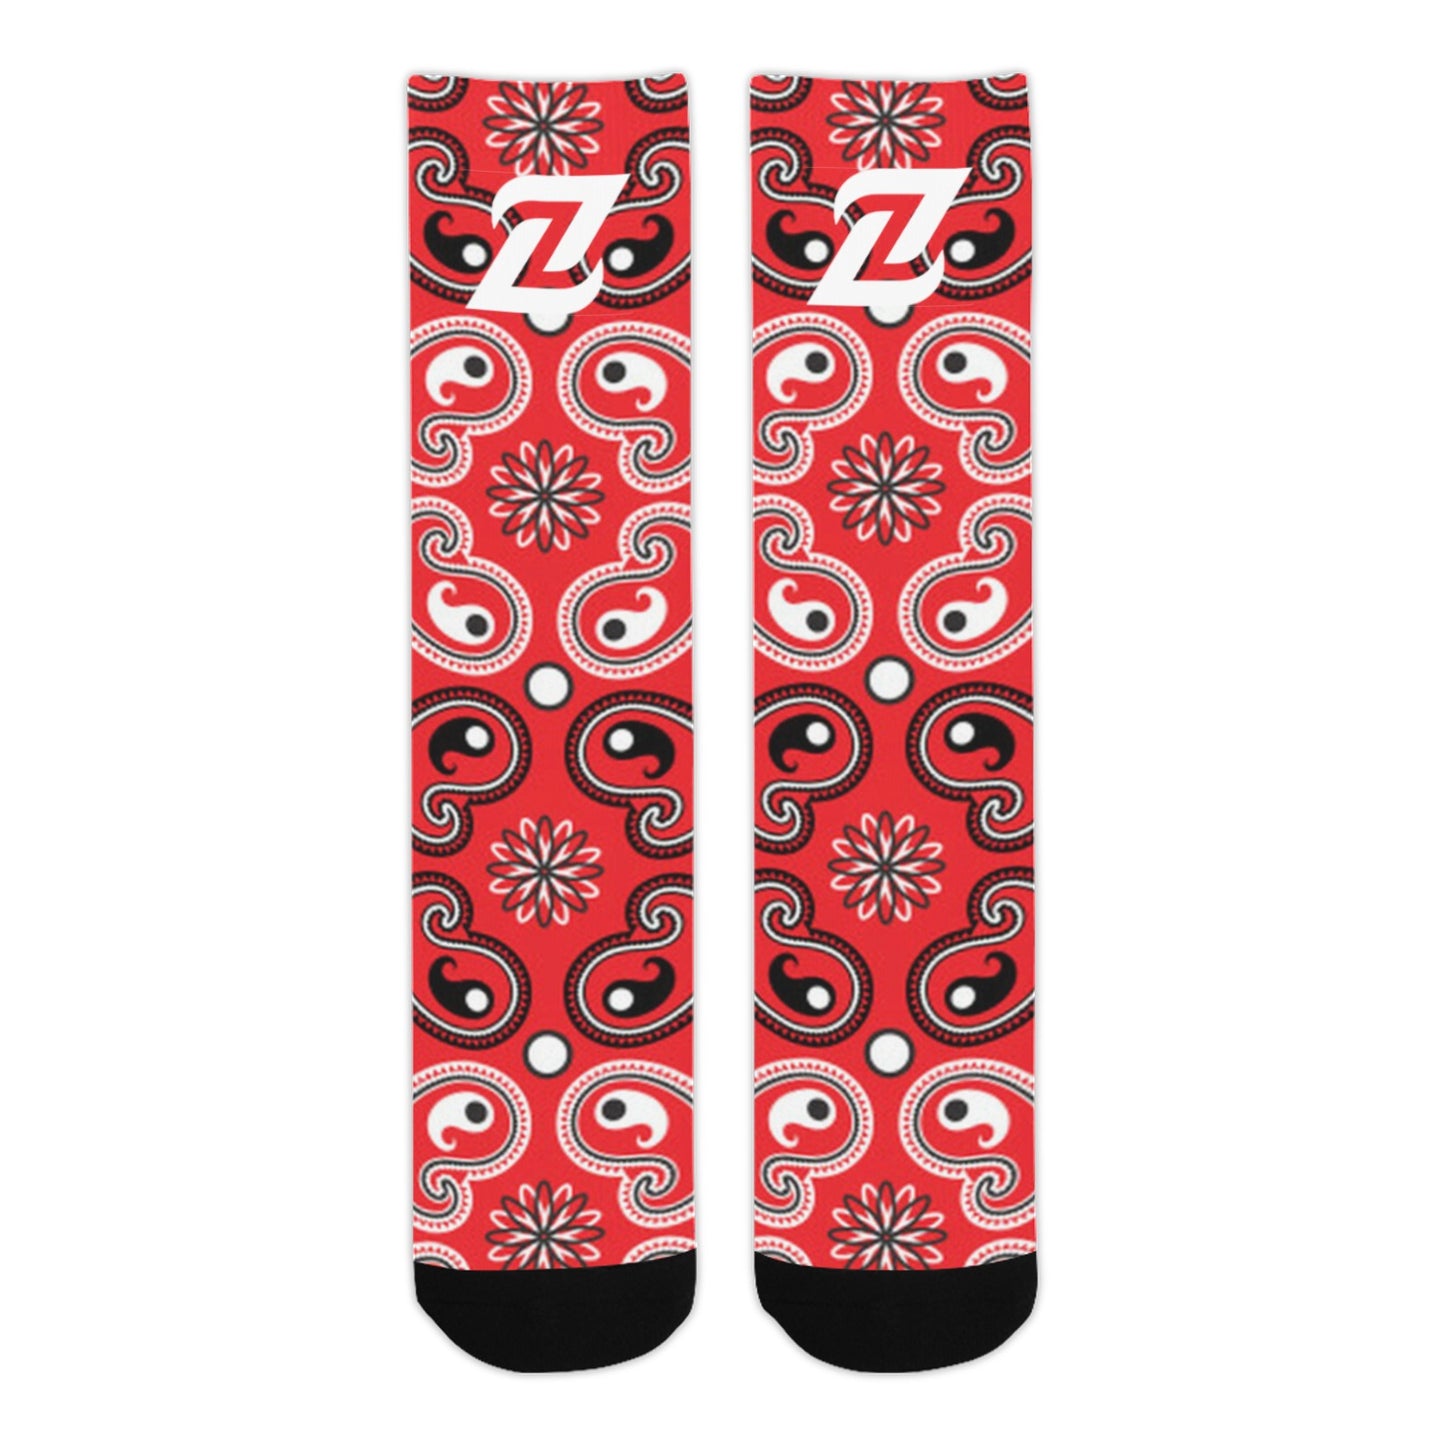 Zen Socks - Red Bandana